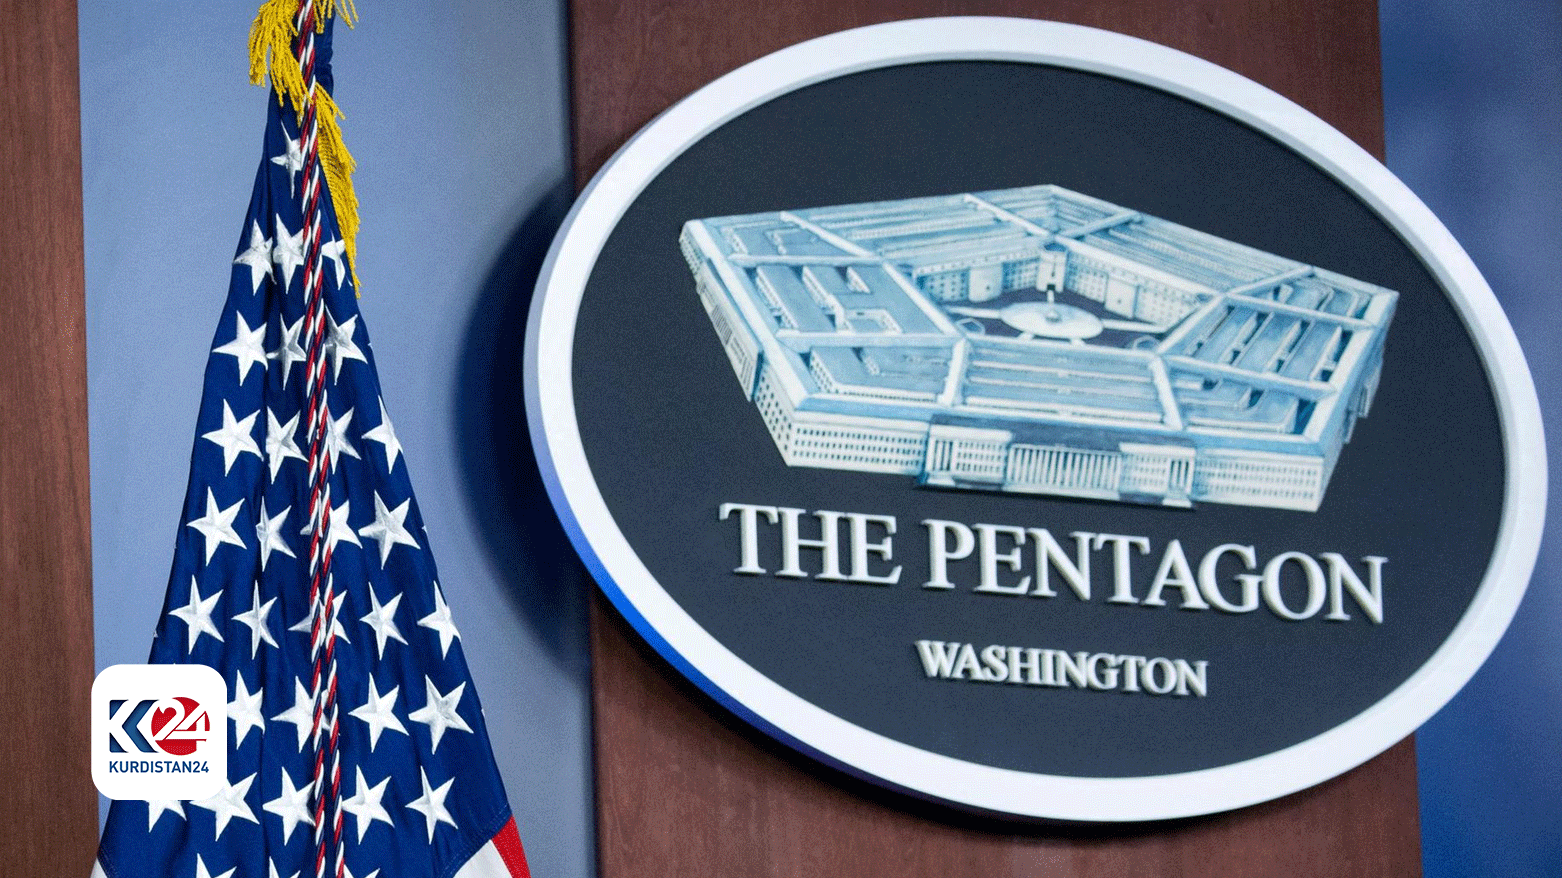 ABD Savunma Bakanlığı (Pentagon)